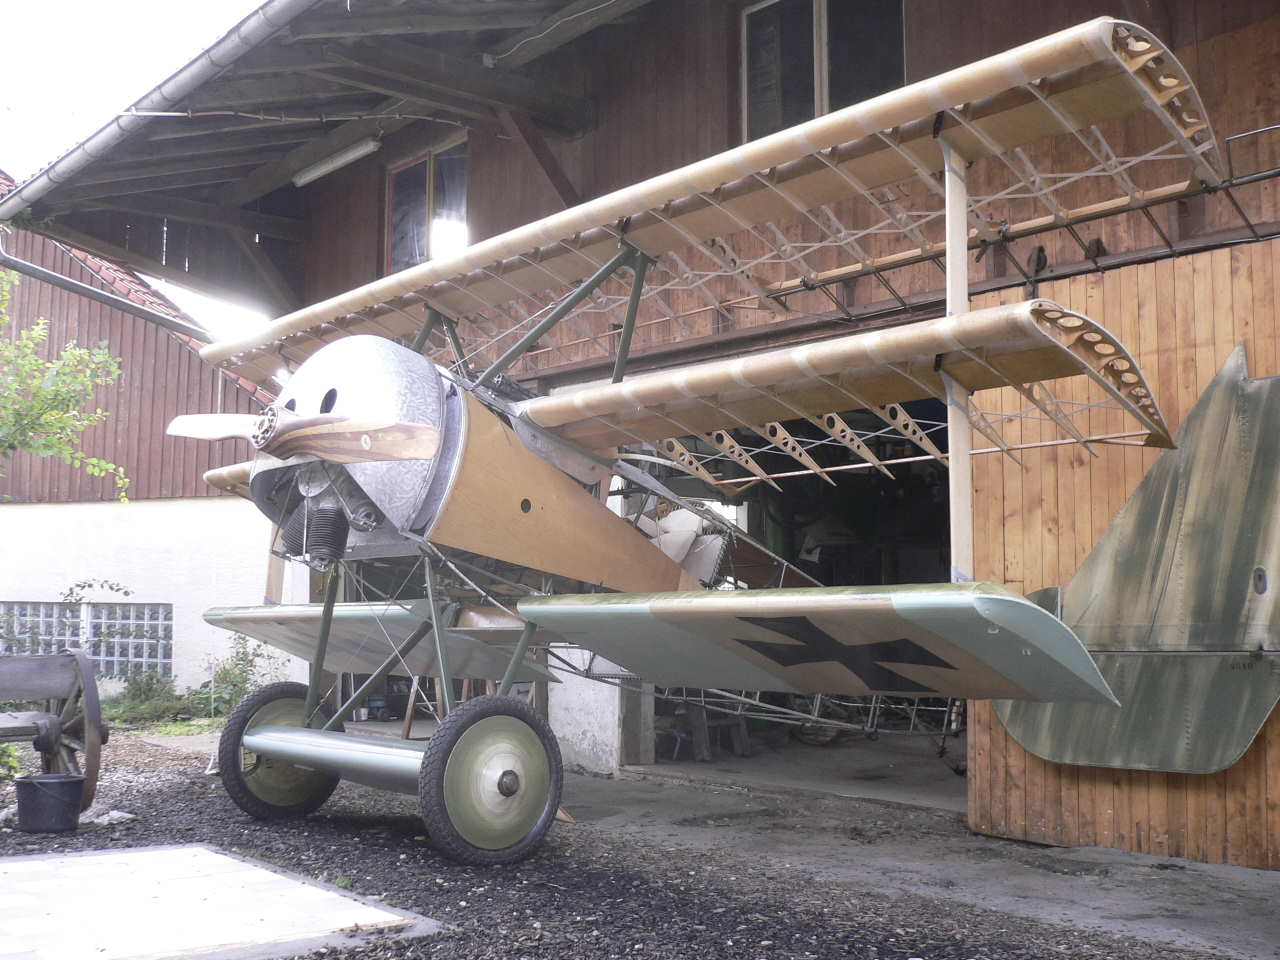 Engels E.1 - Nachbau der Fokker Dr.1